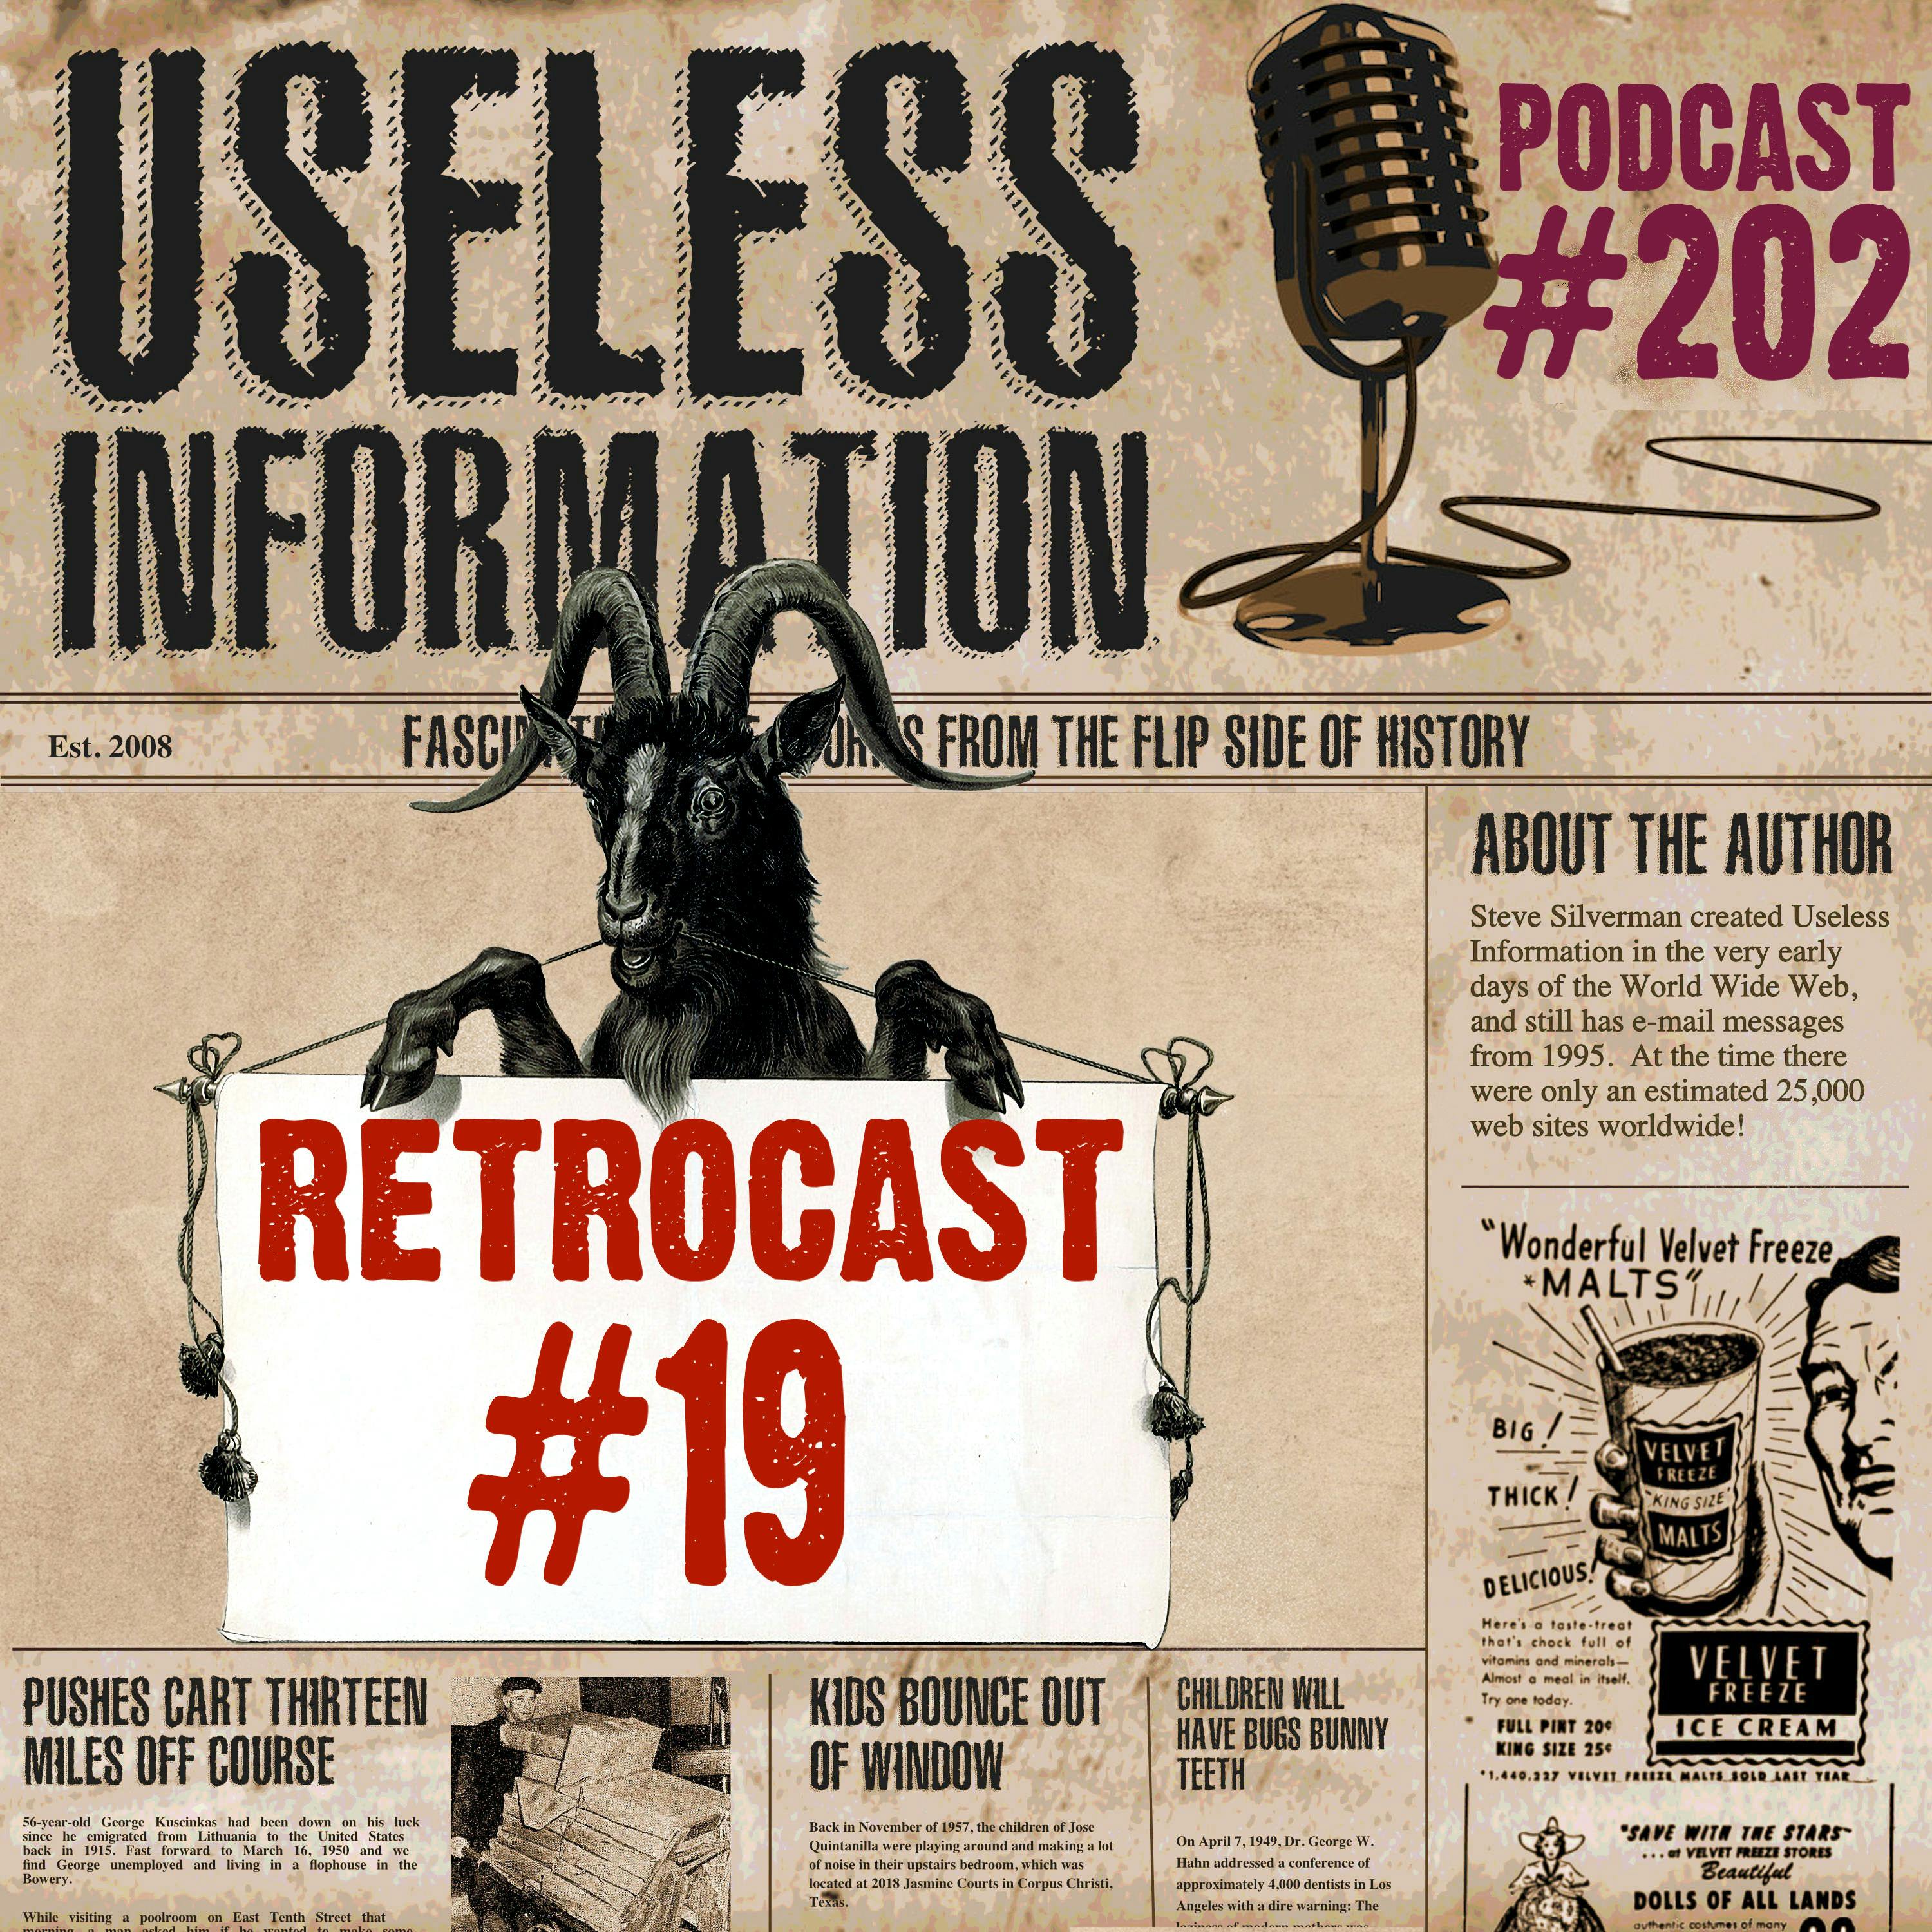 Retrocast #19 - UI Podcast #202